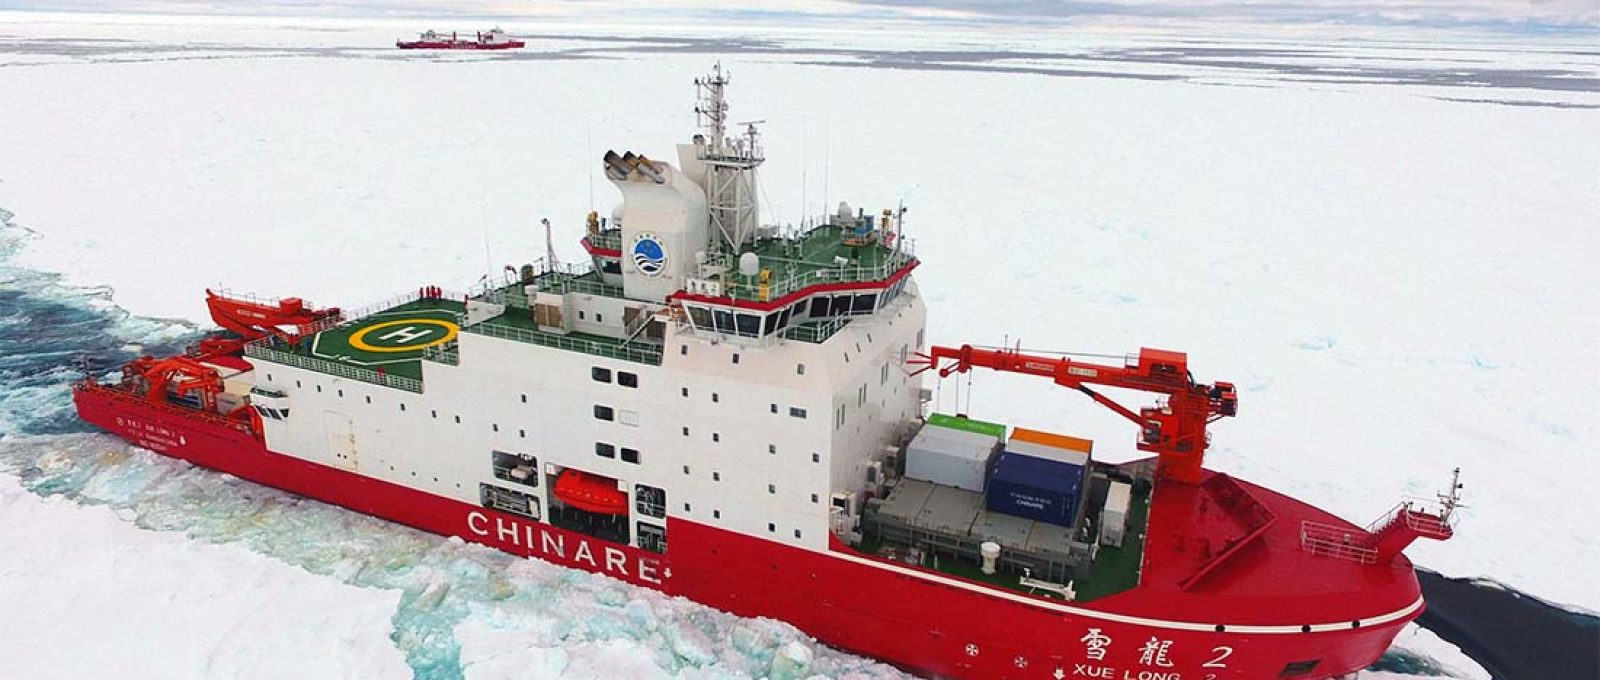 O navio quebra-gelo chinês Snow Dragon-2 (Xinhua).